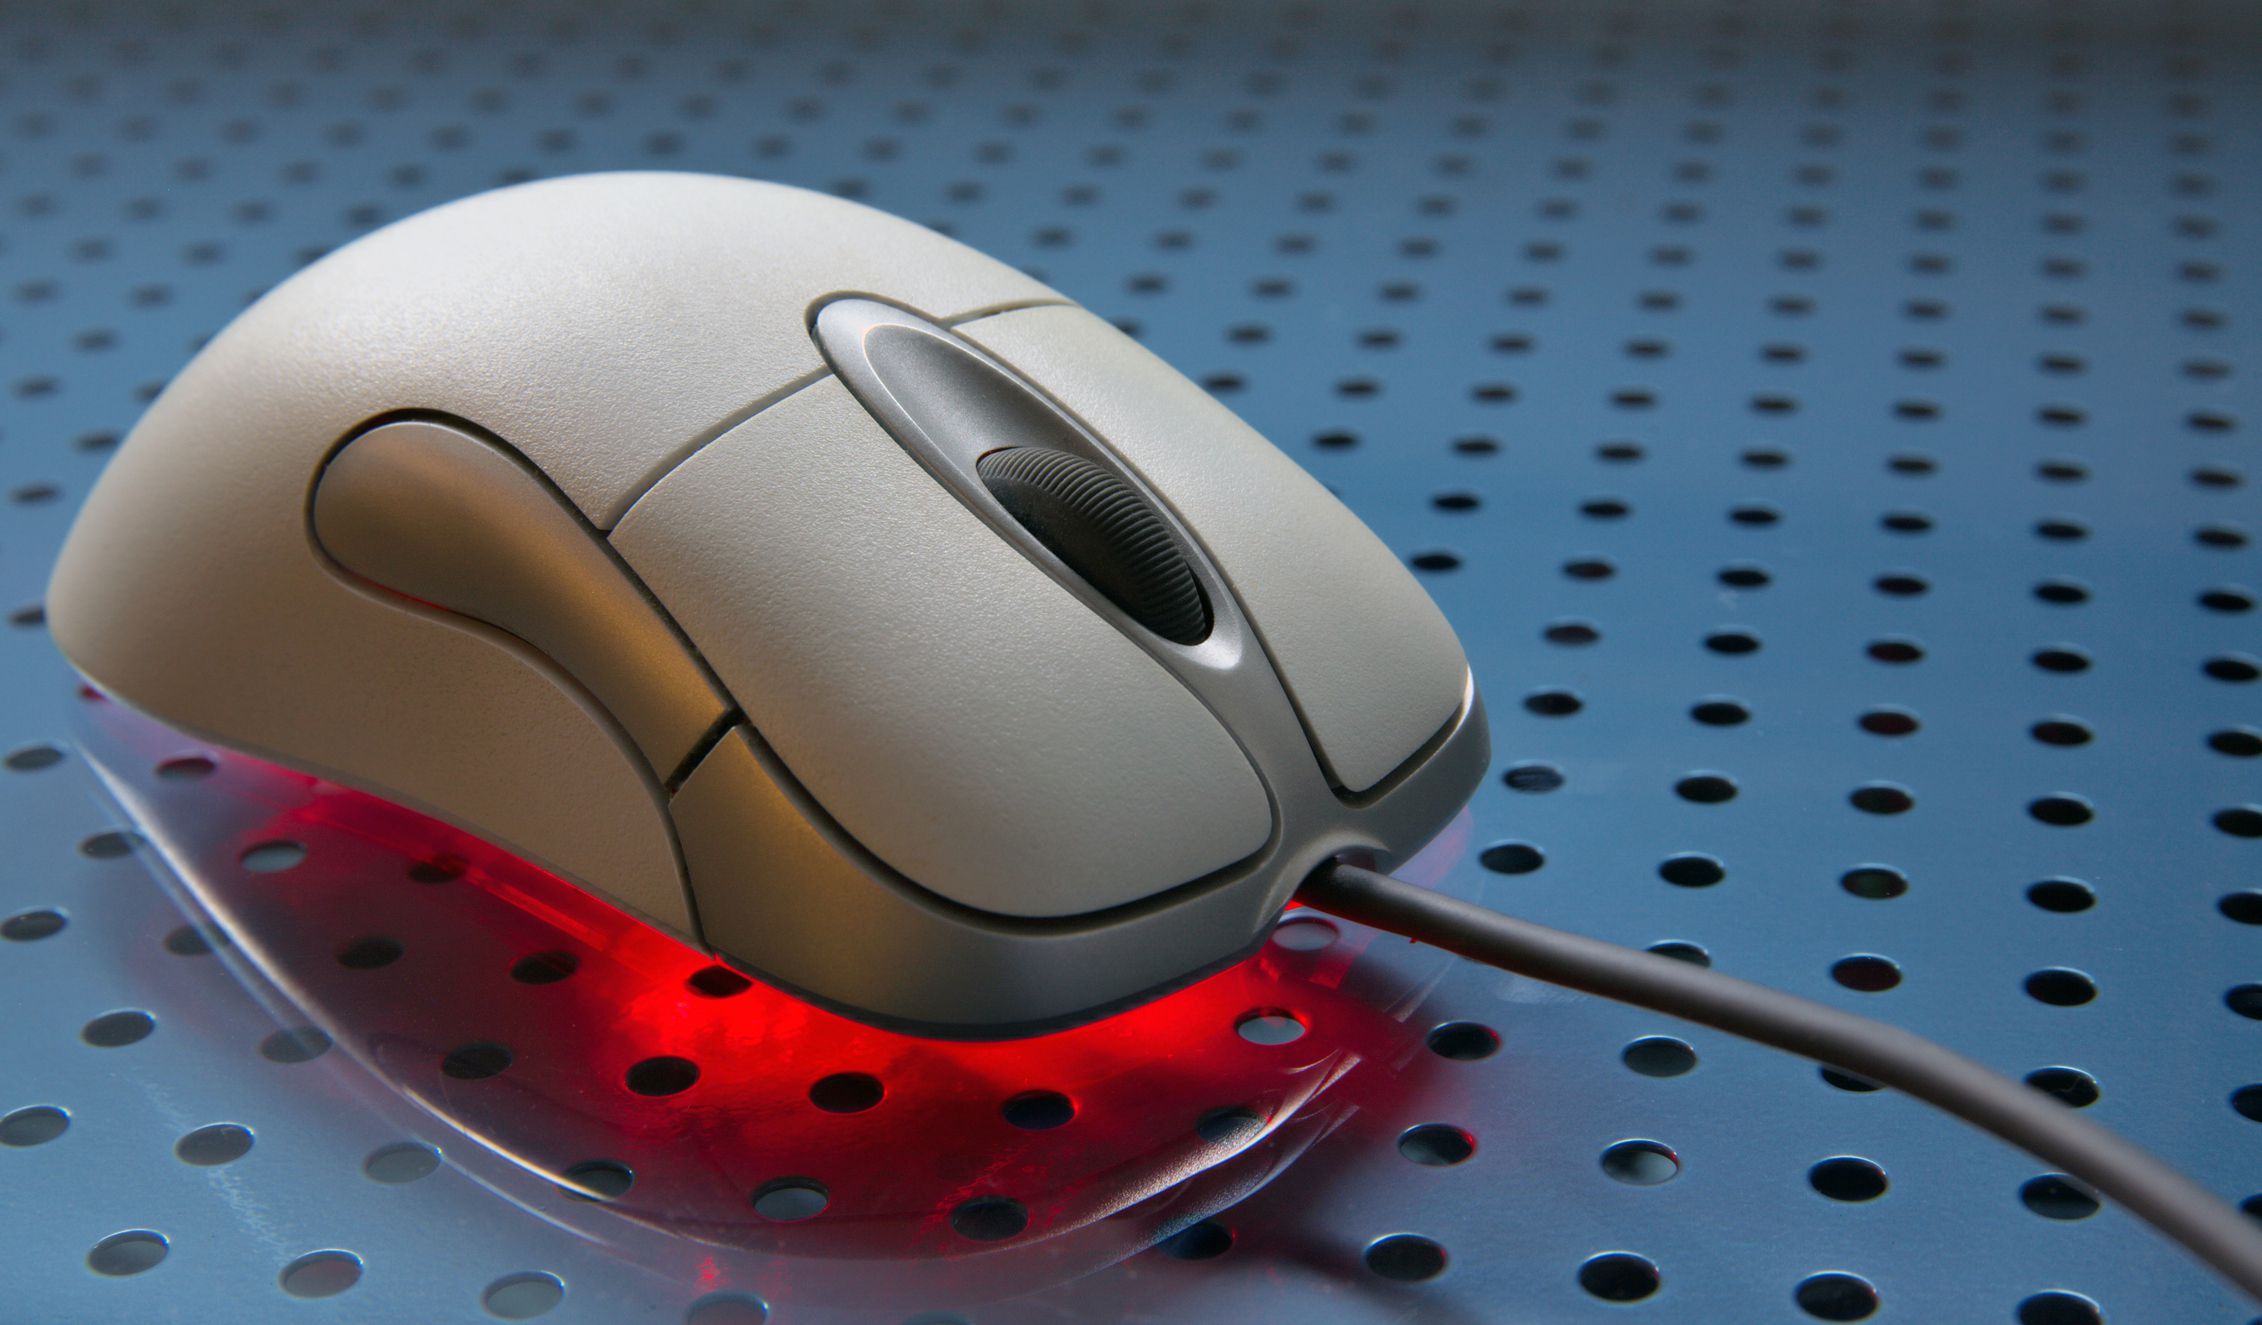 Мышь включает компьютер. Оптическая мышь. Лазерная компьютерная мышь. Оптическая компьютерная мышь. Оптические мыши первого поколения.